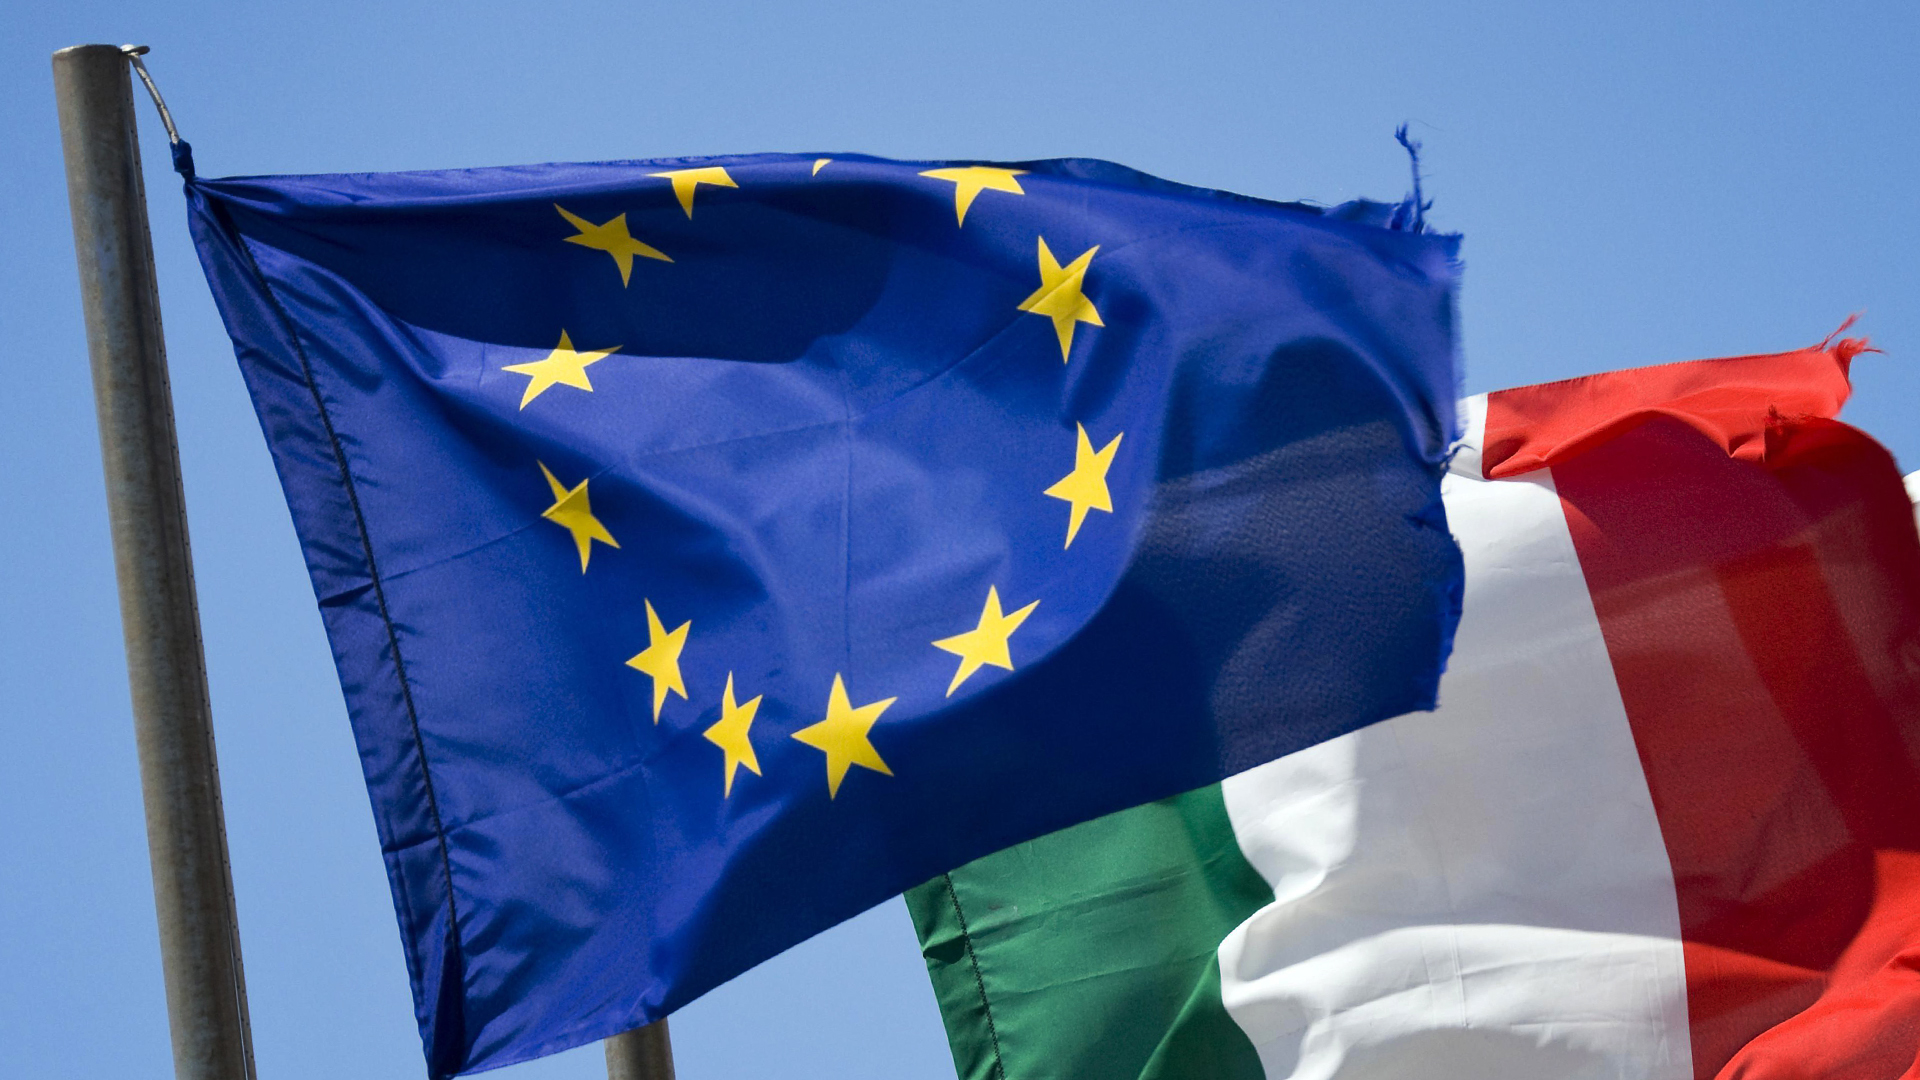 Flaggen der EU und Italiens | Bildquelle: picture alliance / imageBROKER